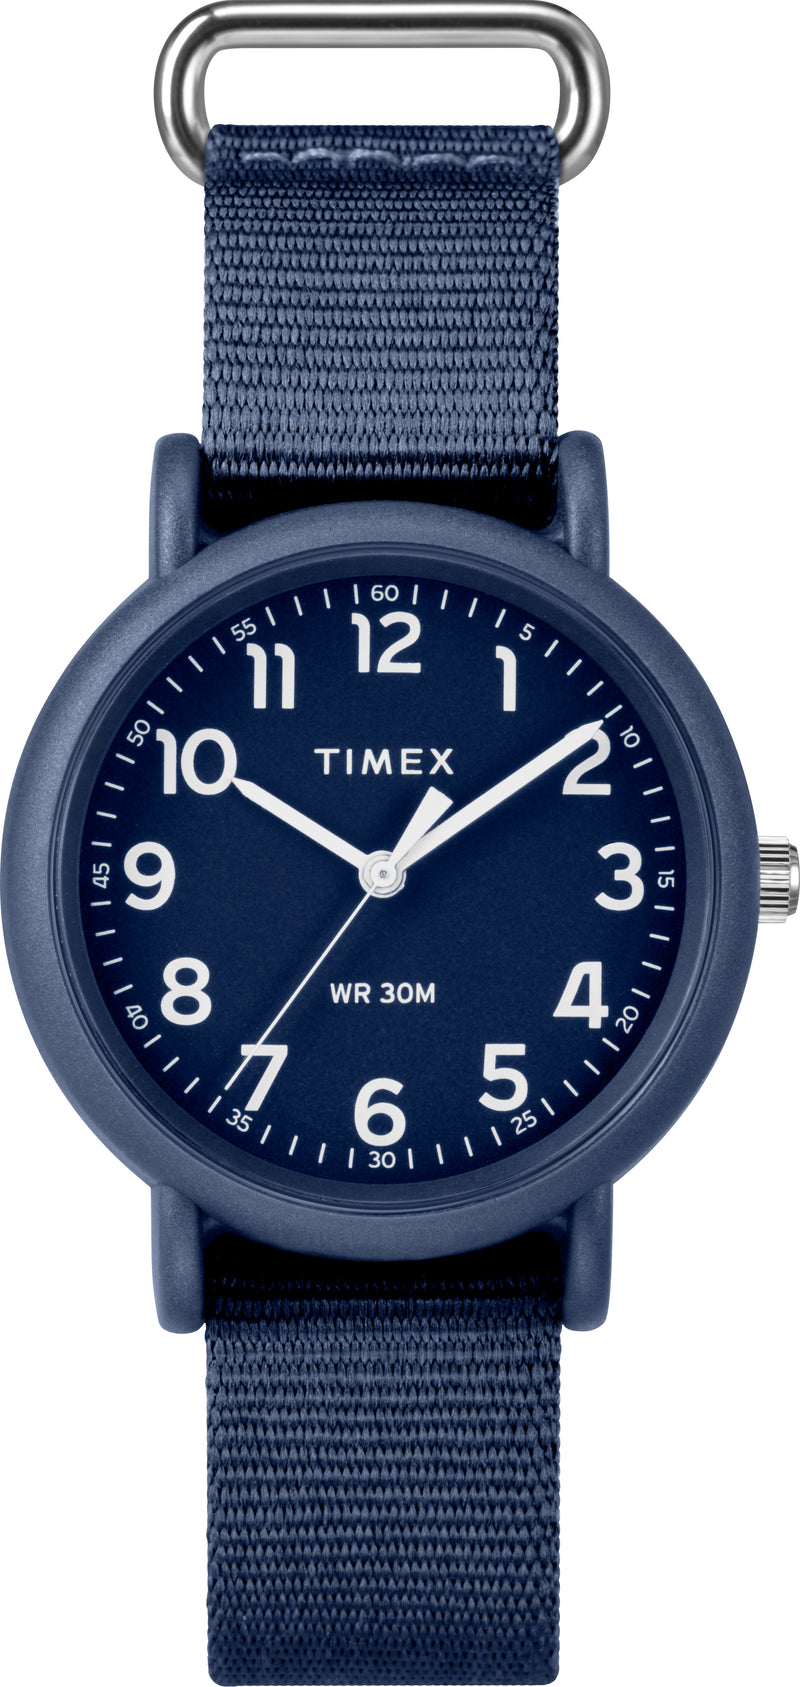 Timex TW2R41000 Weekender   34mm Fabric Strap Watch